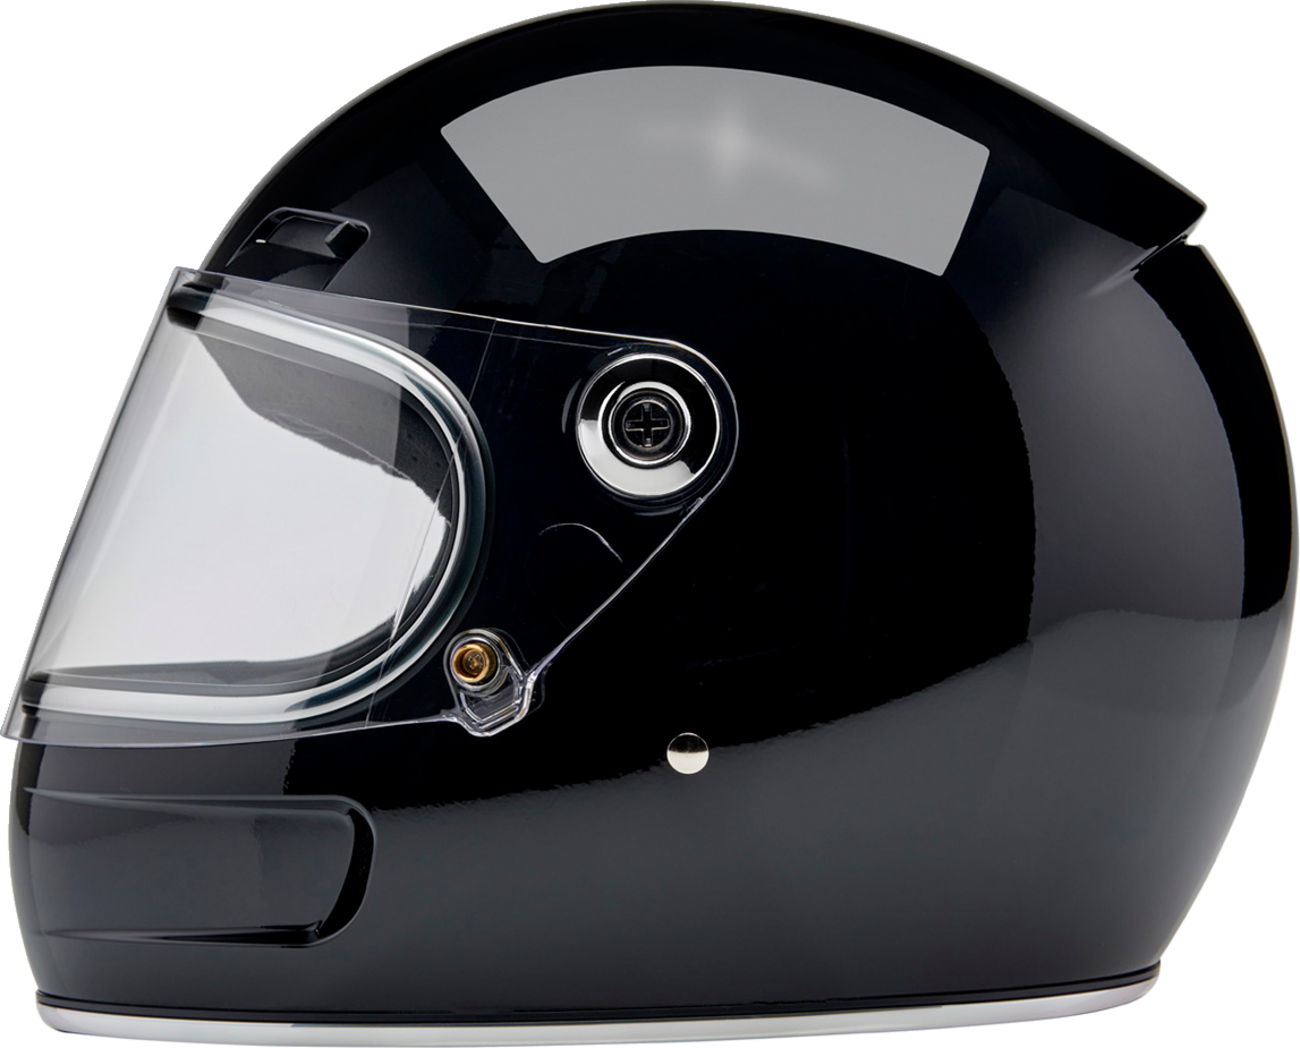 BILTWELL Gringo SV Helmet - Gloss Black - 2XL 1006-101-506